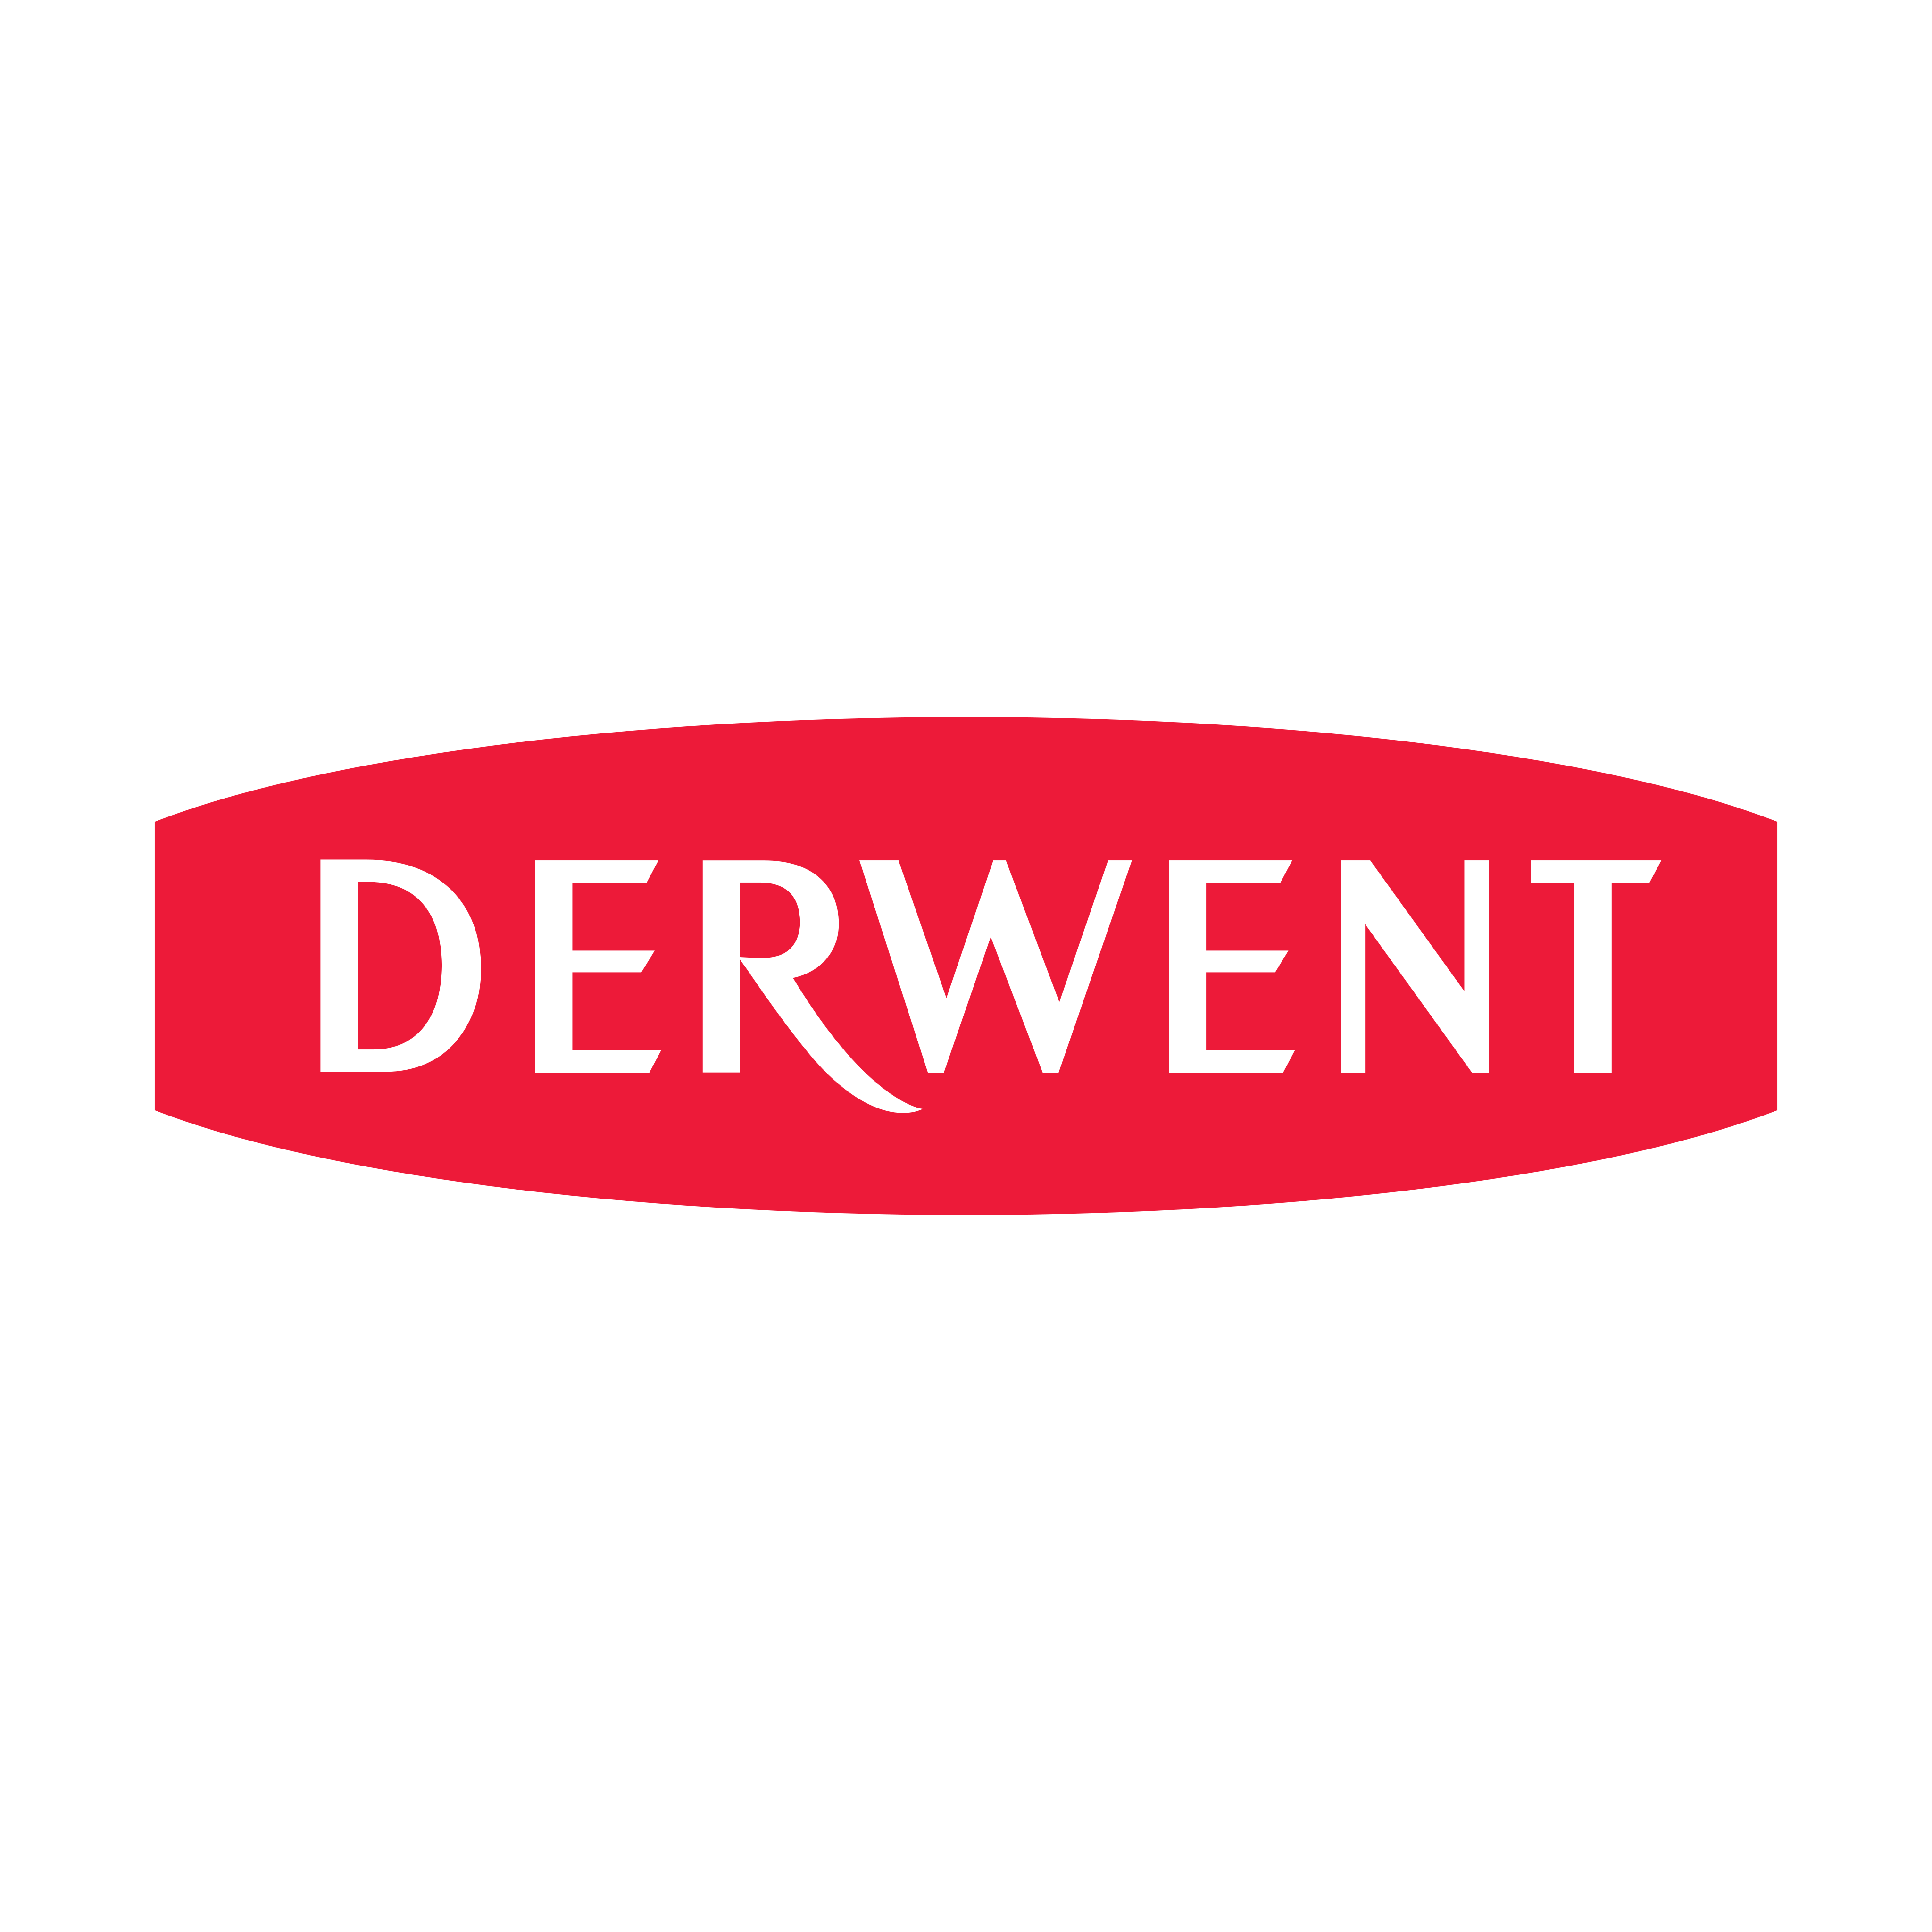 Derwent Logo PNG.